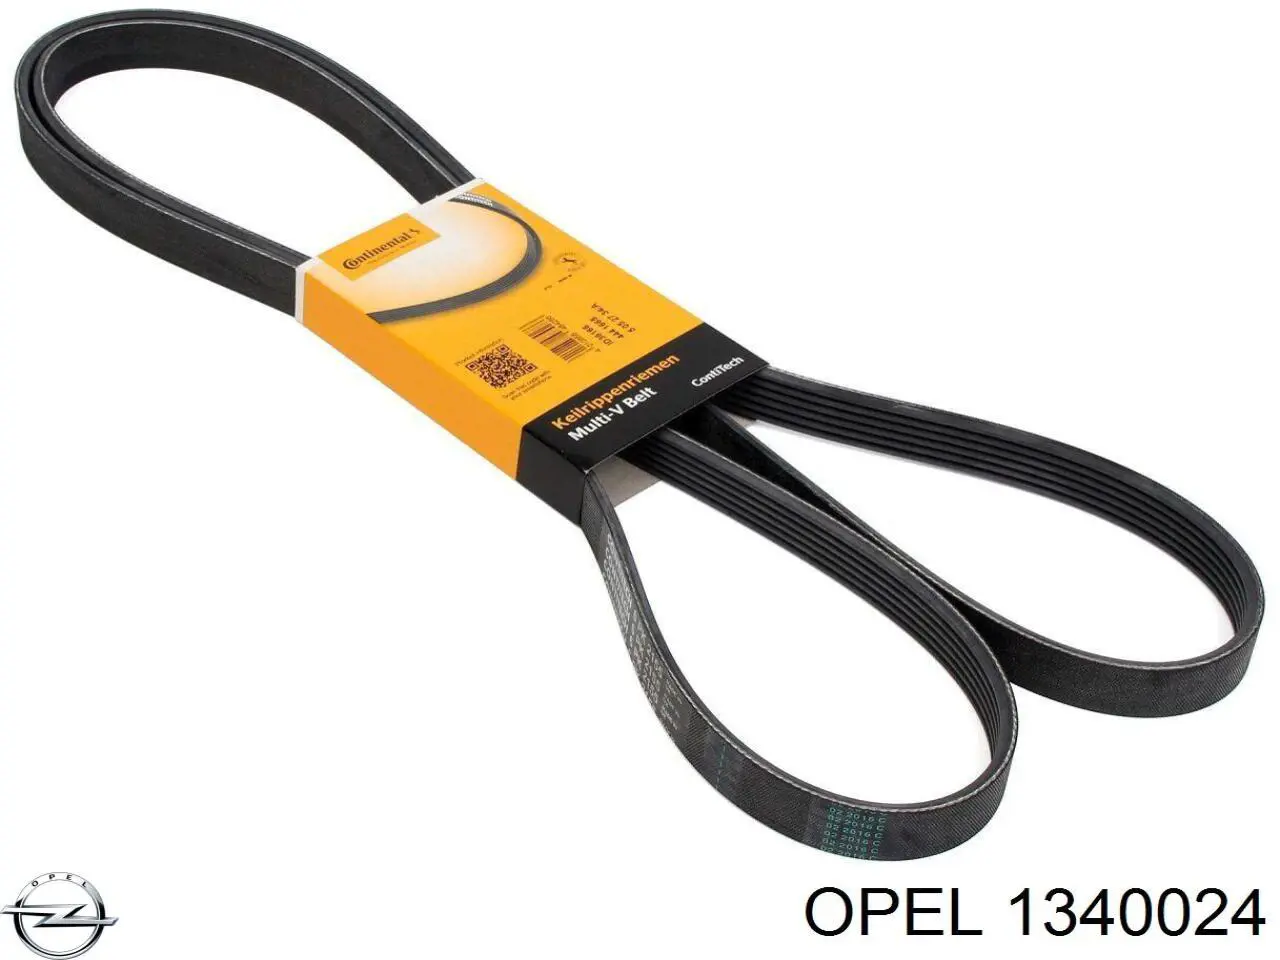 1340024 Opel correa de transmisión